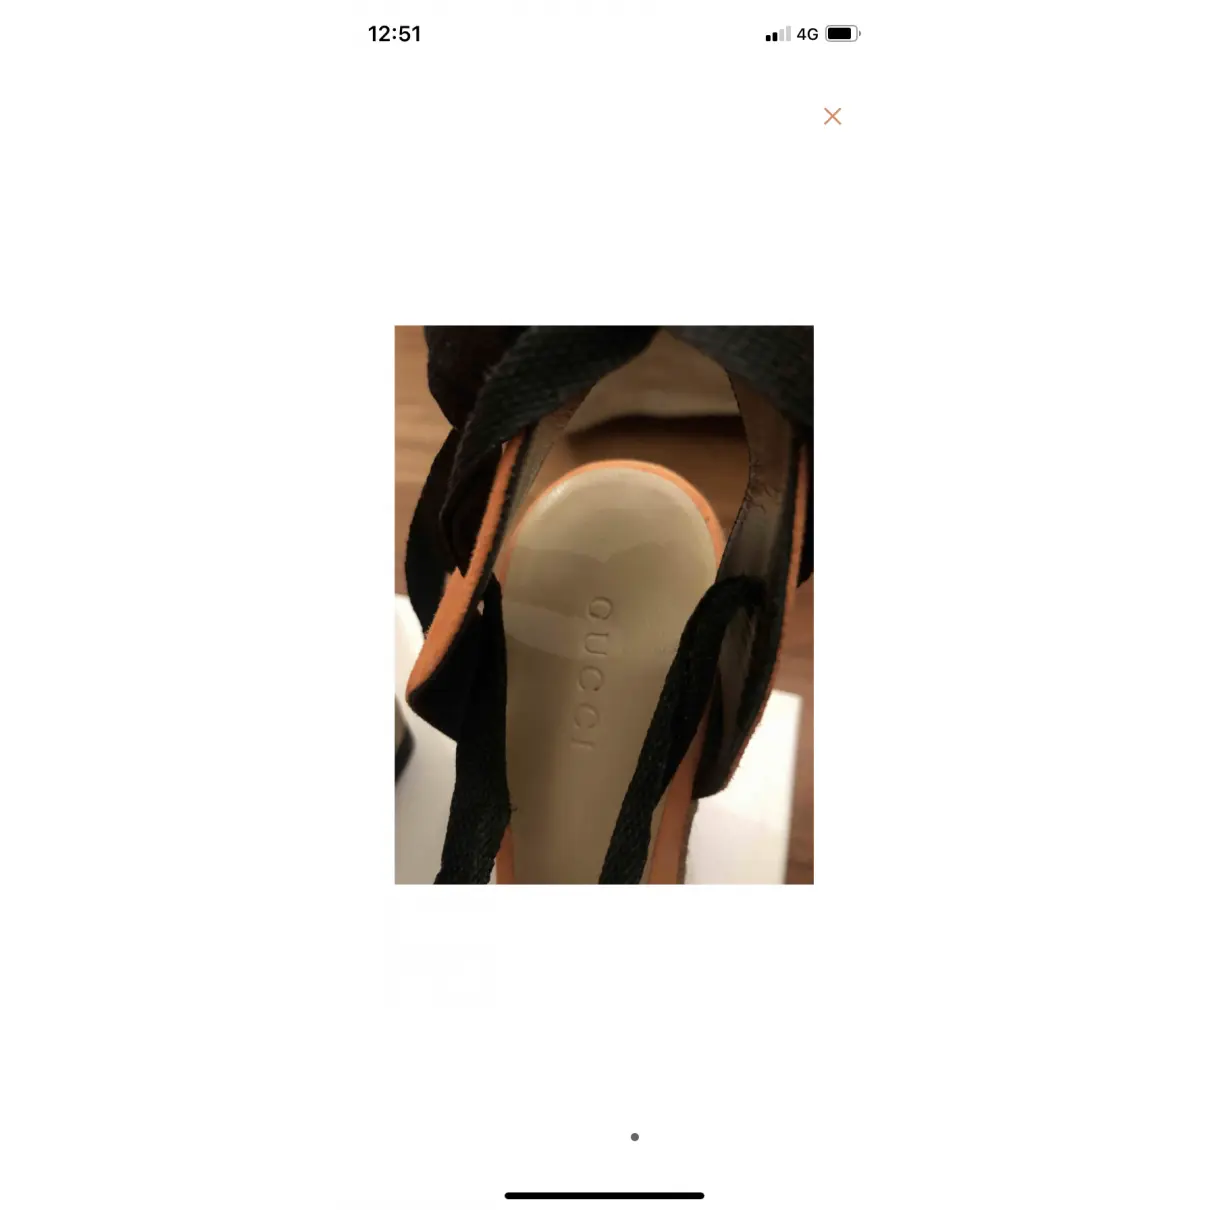 Luxury Gucci Sandals Women